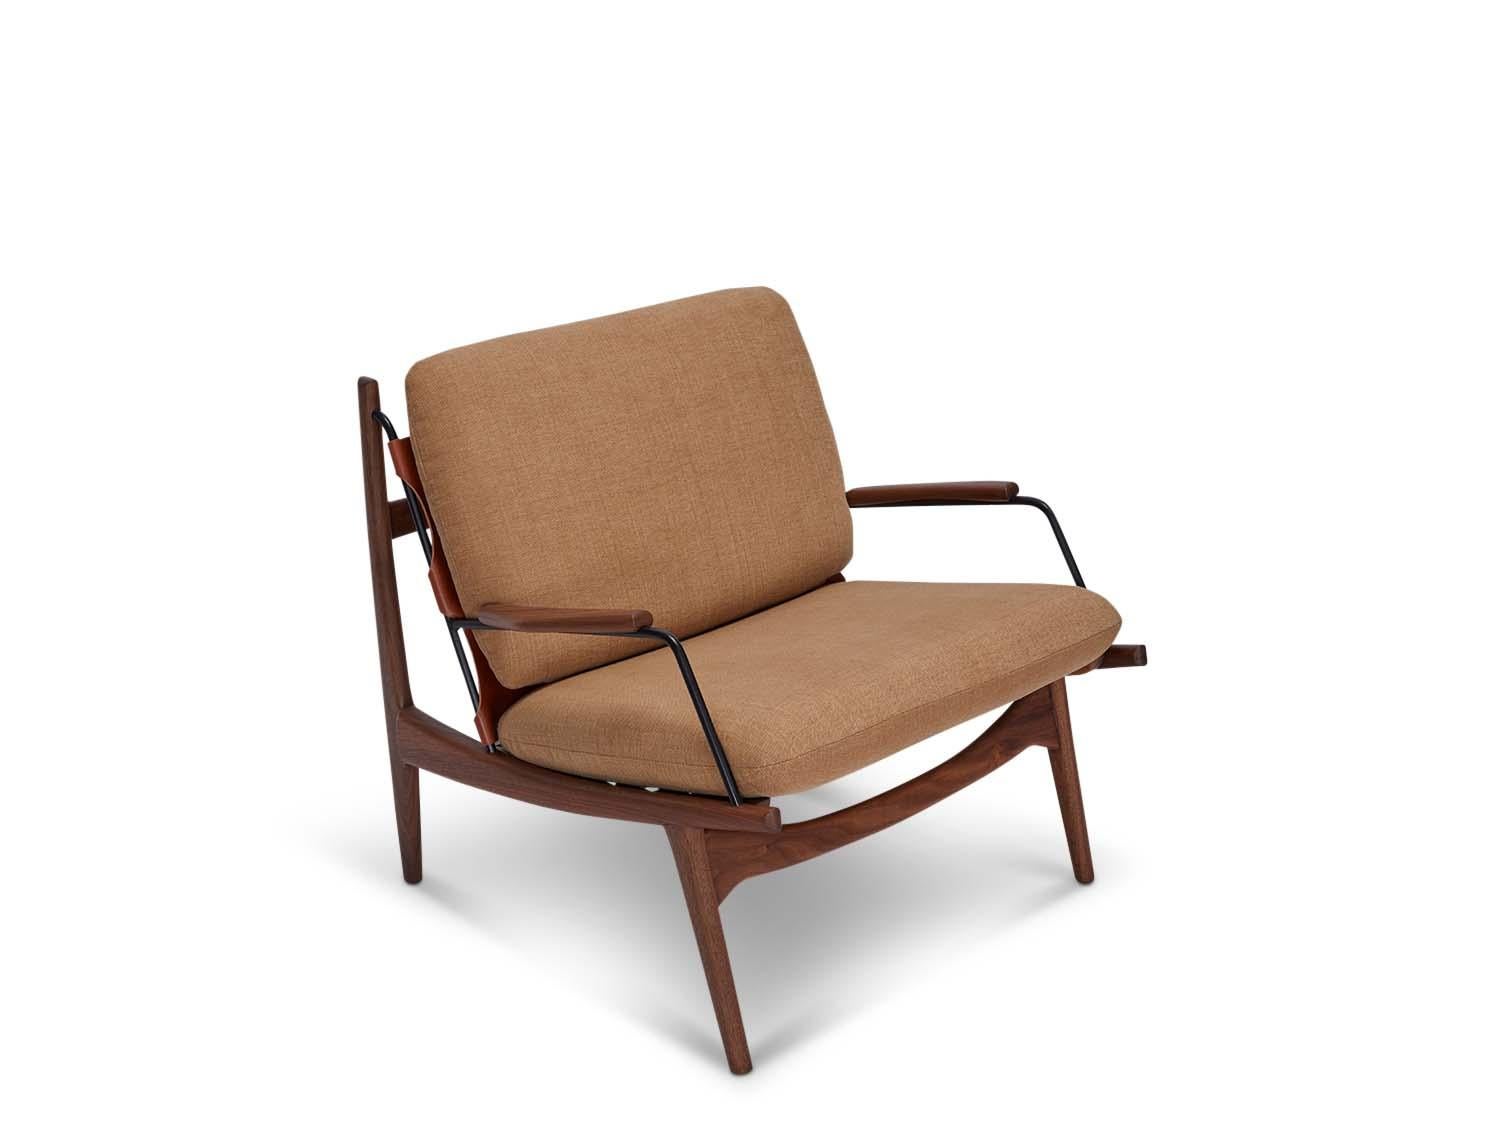 Fauteuil de fabricant par Lawson-Fenning. Le fauteuil Maker's Armchair est une chaise à structure en noyer ou en chêne massif, avec un harnais en cuir et des détails en laiton sur l'assise et le dossier. Les coussins d'assise et de dossier sont